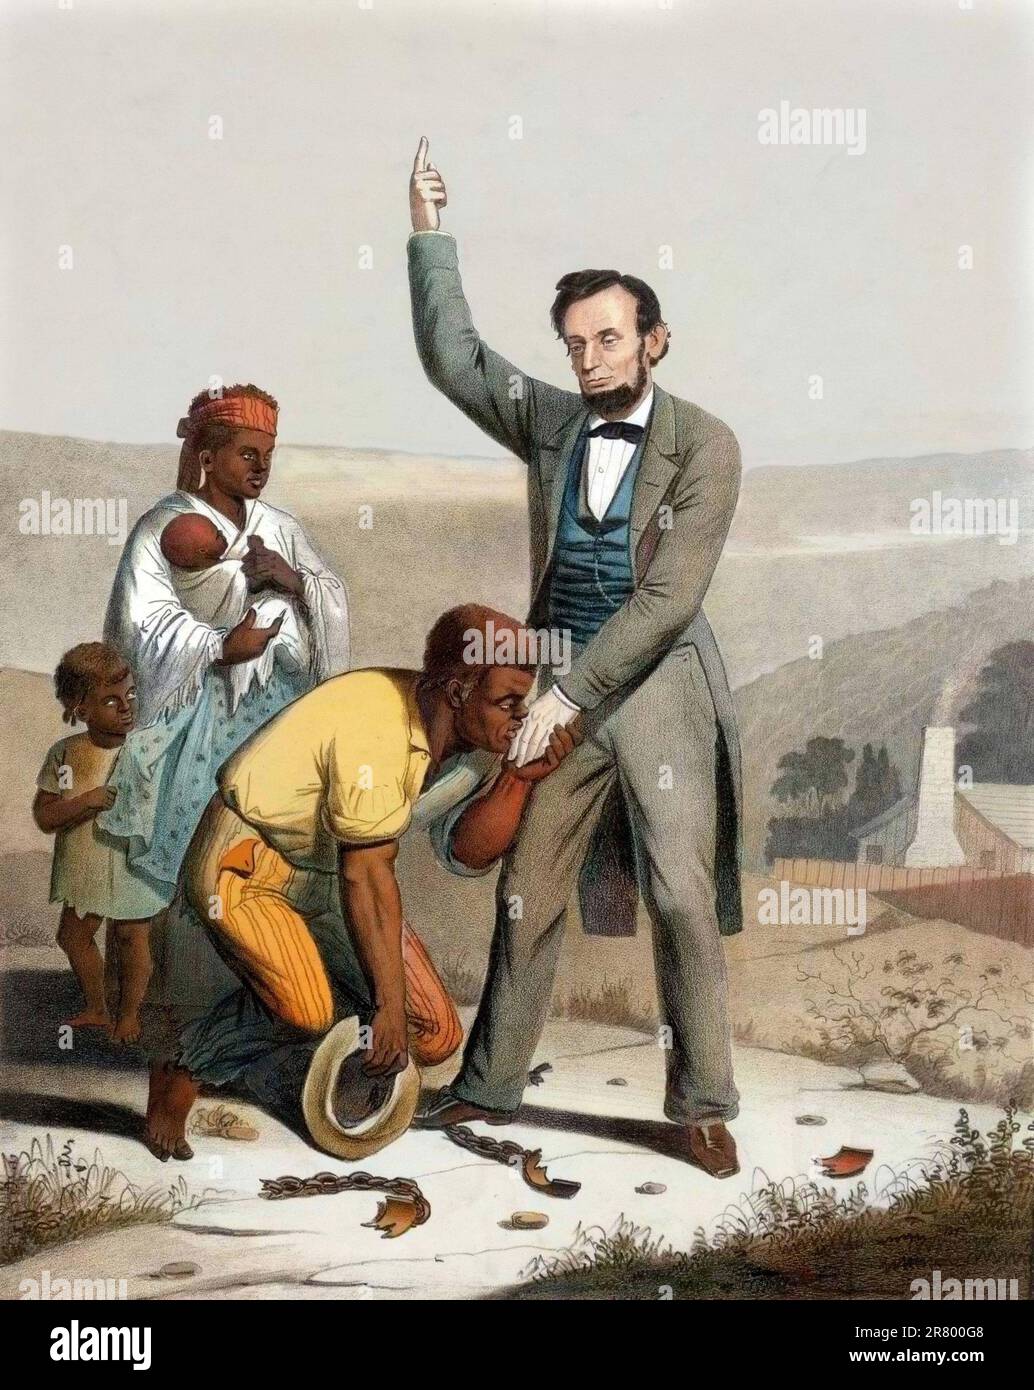 Le President des Etats Unis Abraham Lincoln (1809-1865) Proklame l'Emancipation des esclaves des Etats du sud le 22/09/1862. Lithographie Stockfoto